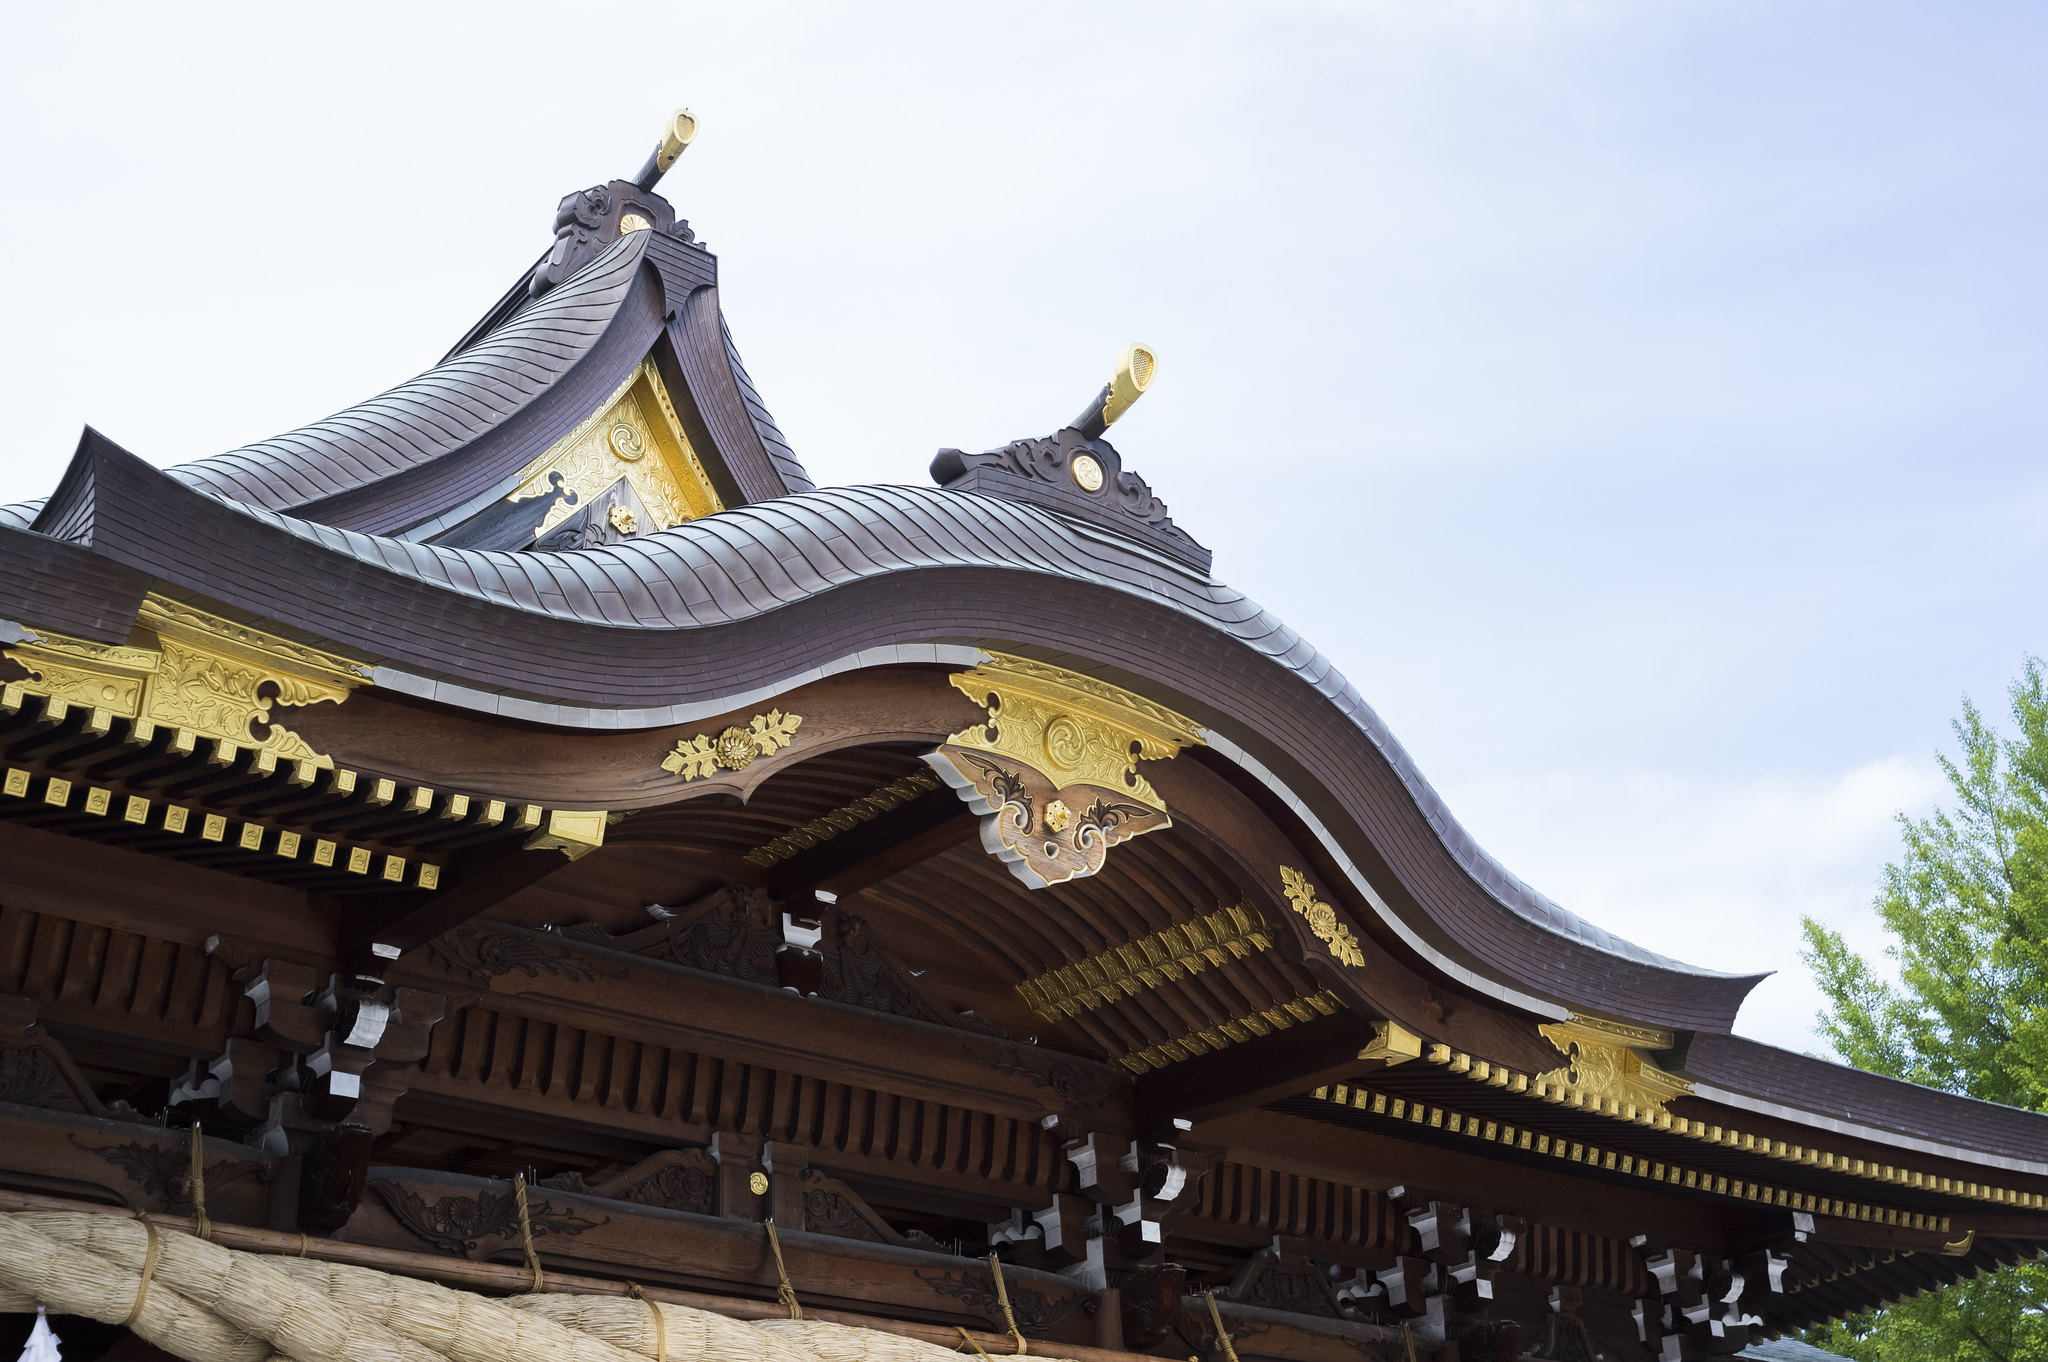 Samukawa Shrine